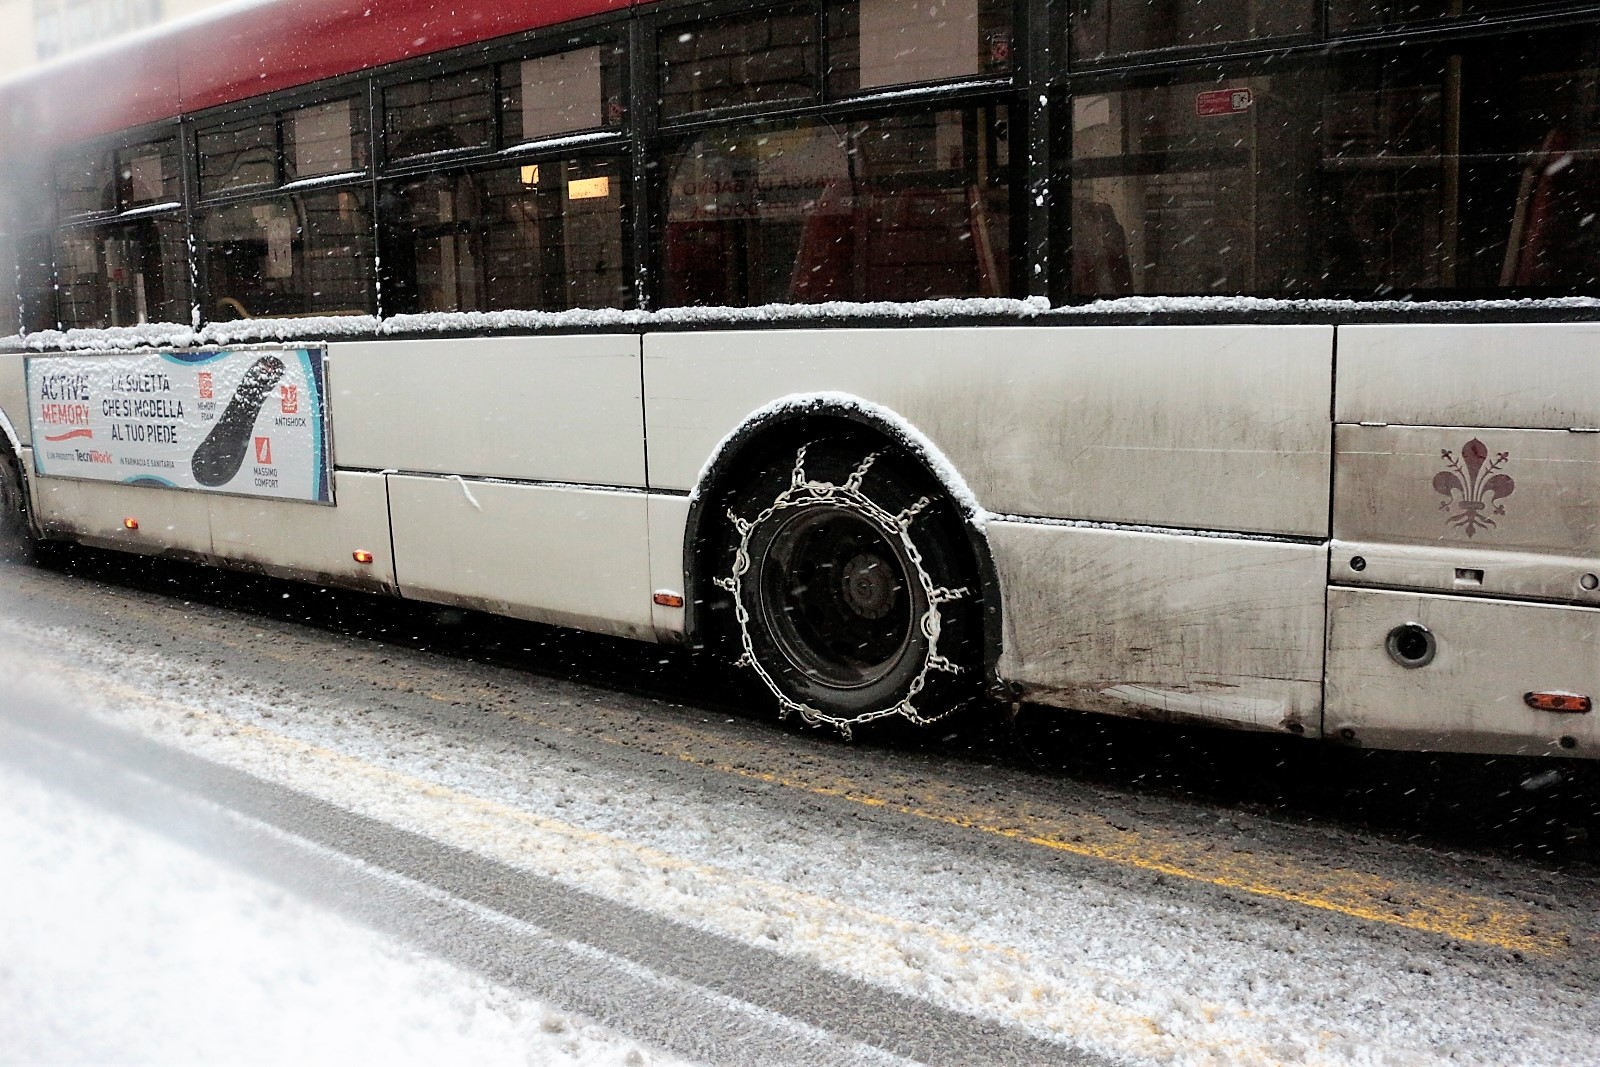 81 i bus Ataf in servizio oggi 1 marzo (foto Antonello Serino - Redazione di Met)